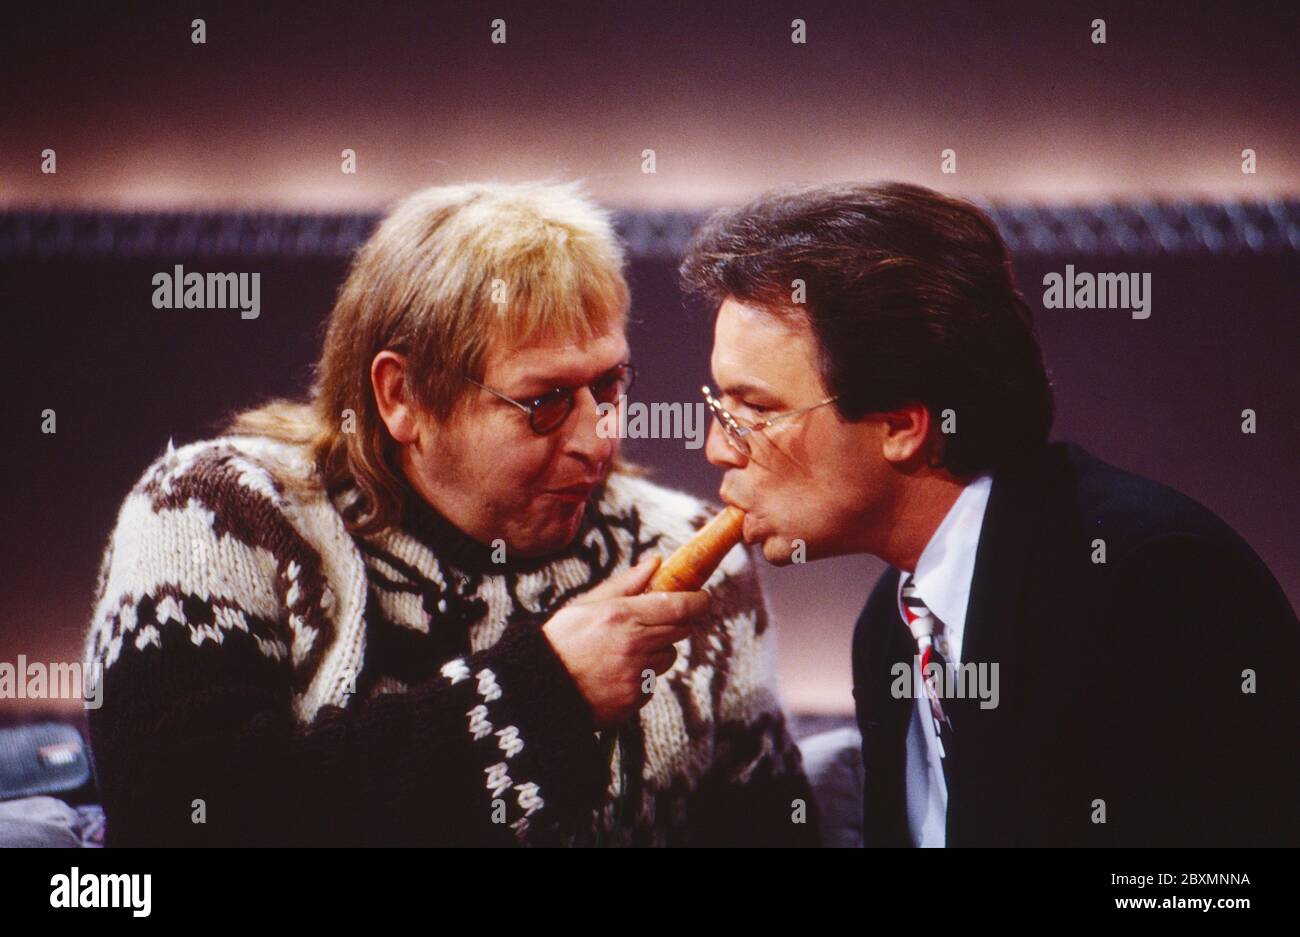 Wetten dass, Spielshow, Deutschland 1992, Gast Diether Krebs als Martin füttert Moderator Wolfgang Lippert mit einer Karotte Stock Photo